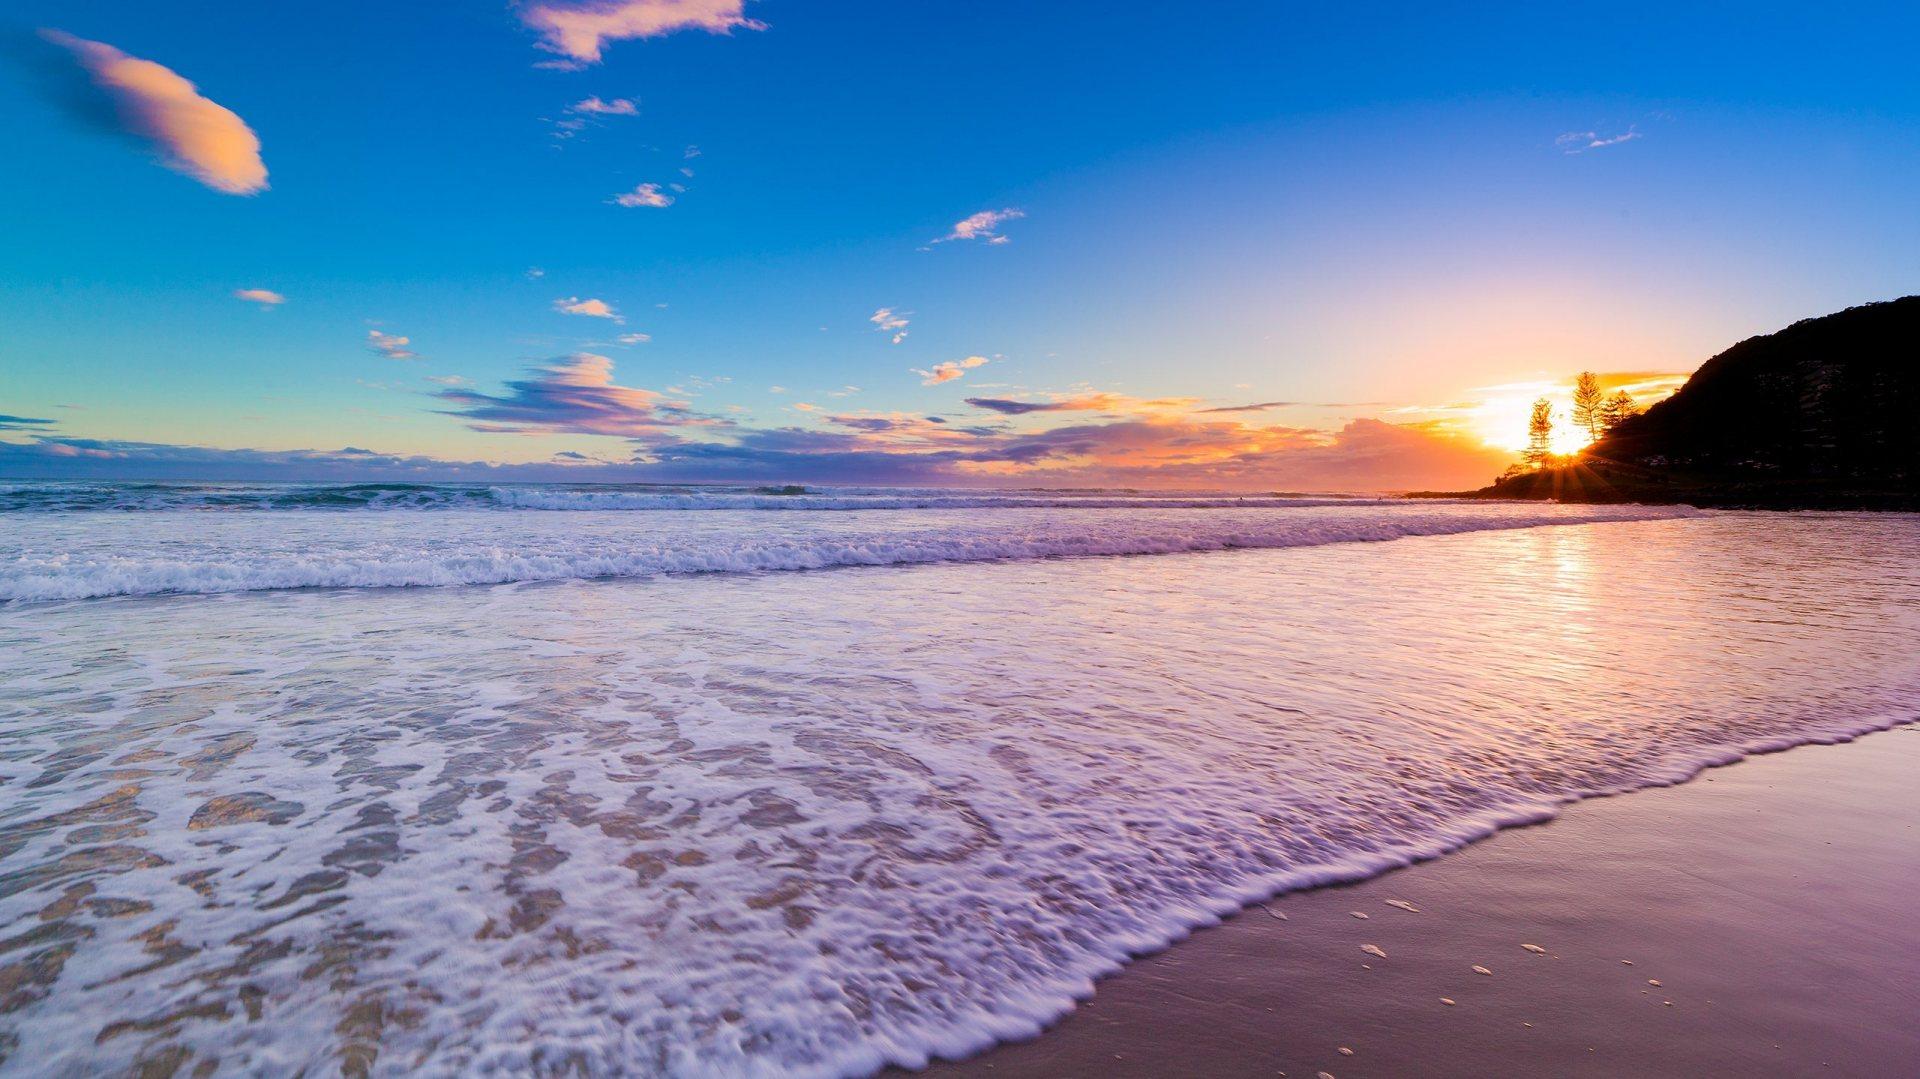 Free download Beach Sunset Wallpaper Desktop Images Of Beach